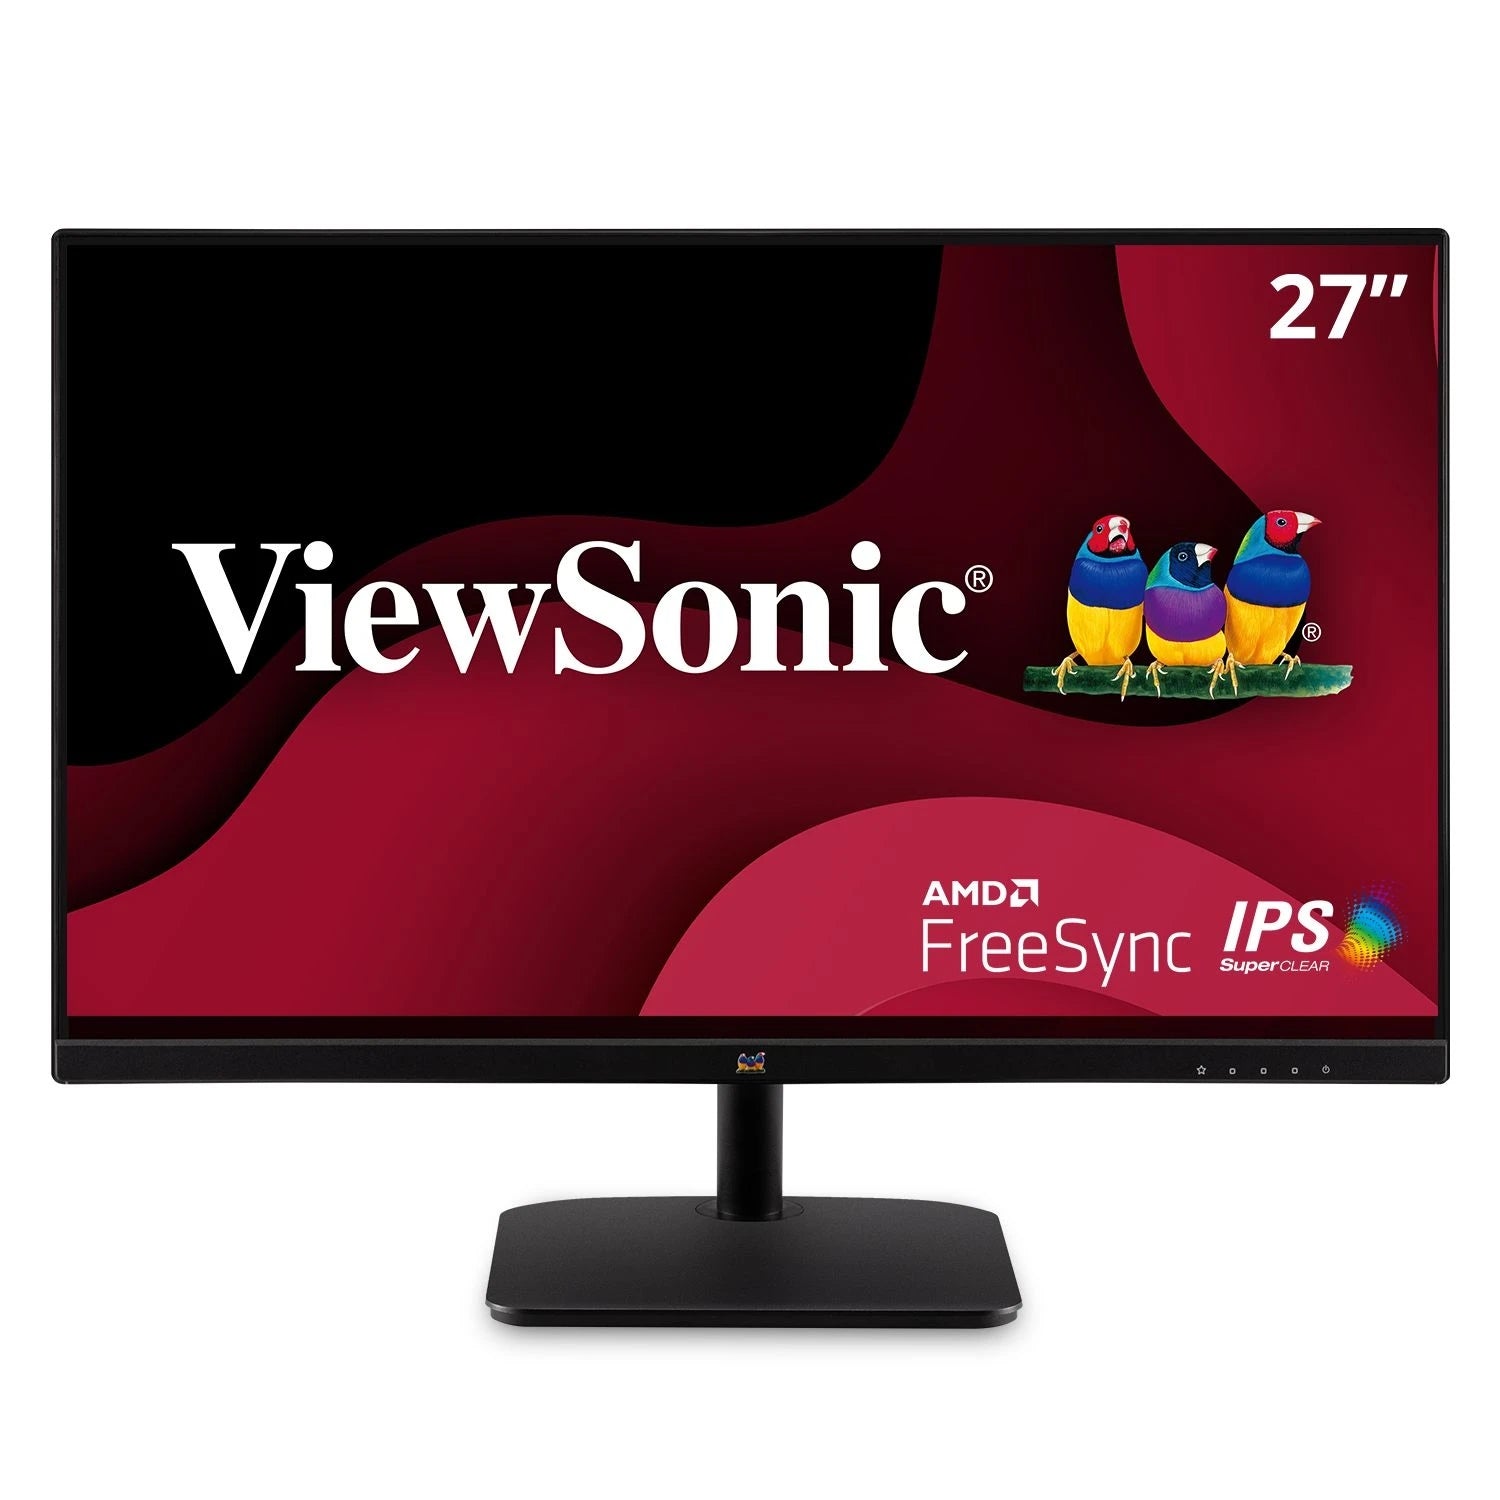 Monitor Viewsonic Va2735-H, 1920 X 1080, Full Hd, Panel Ips, Free Sync, 75 Hz, 4 Ms, Cable Hdmi Incluido, Vga In, Vesa, 3 Años De Garantia